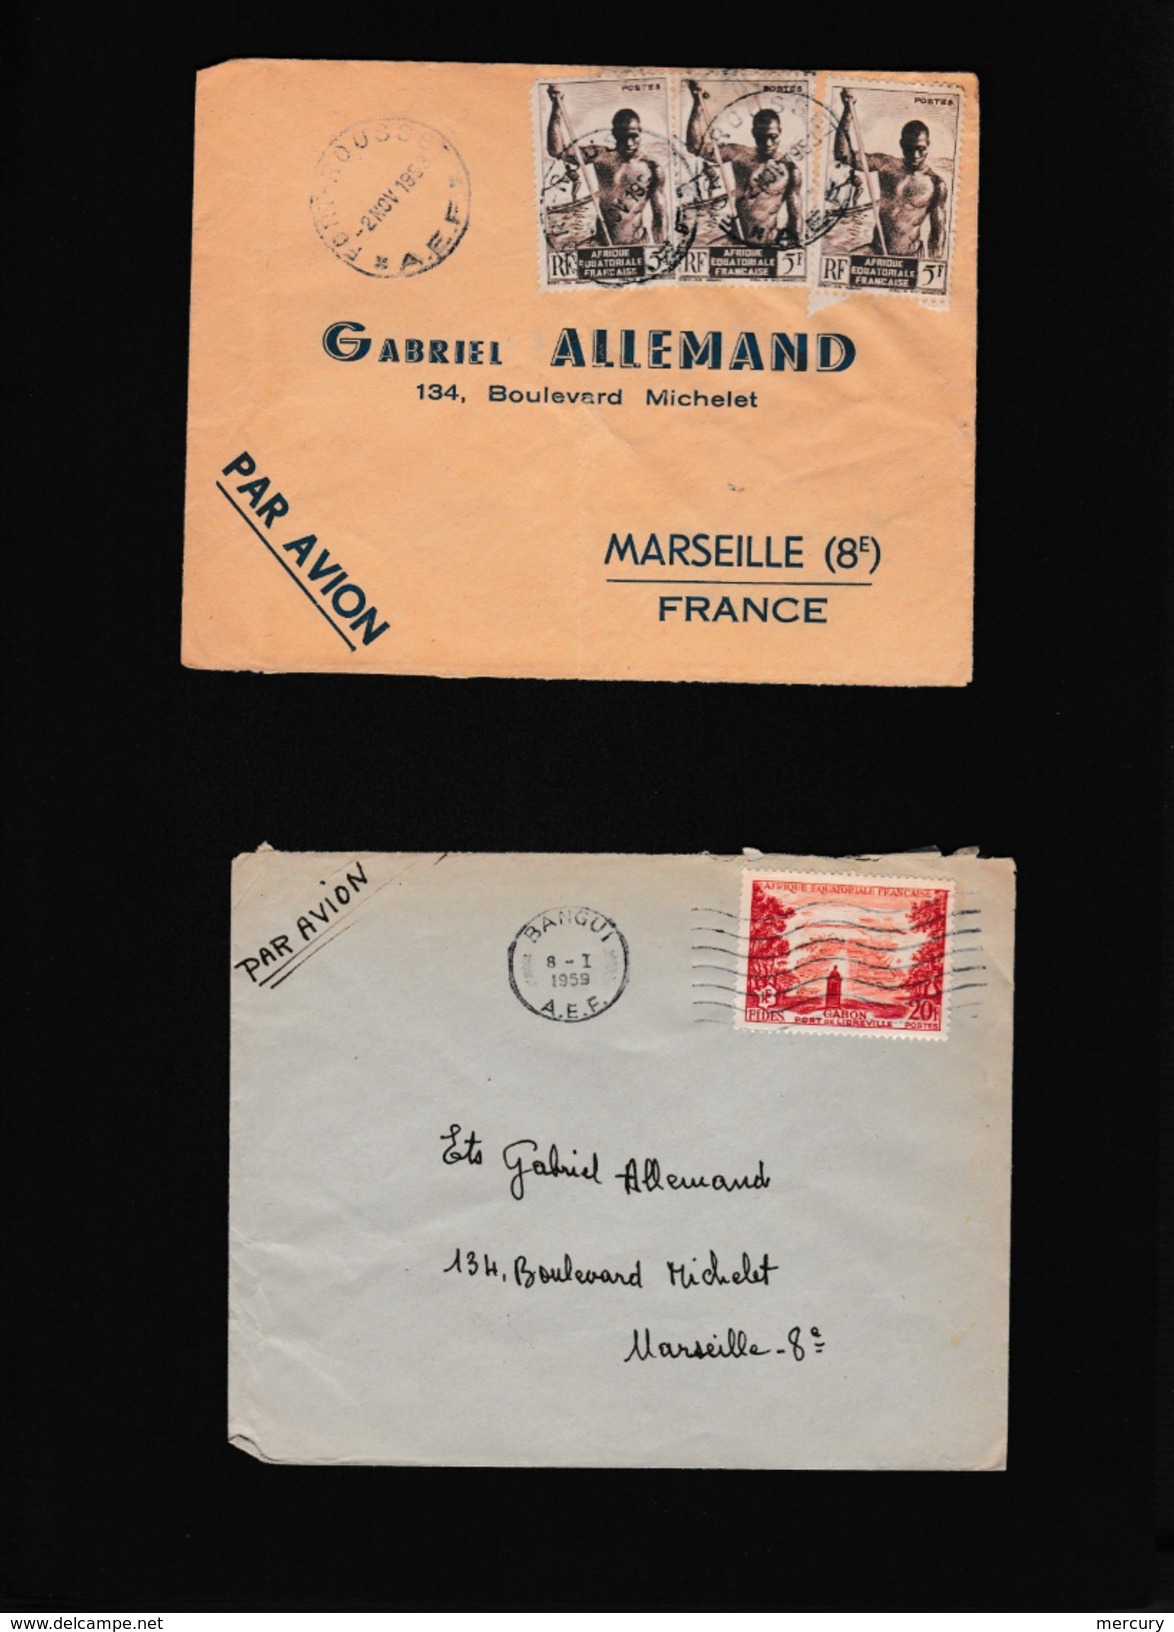 COLONIES - Bel ensemble de 82 lettres des années 50 d'Afrique noire avec des petits bureaux - 41 scans